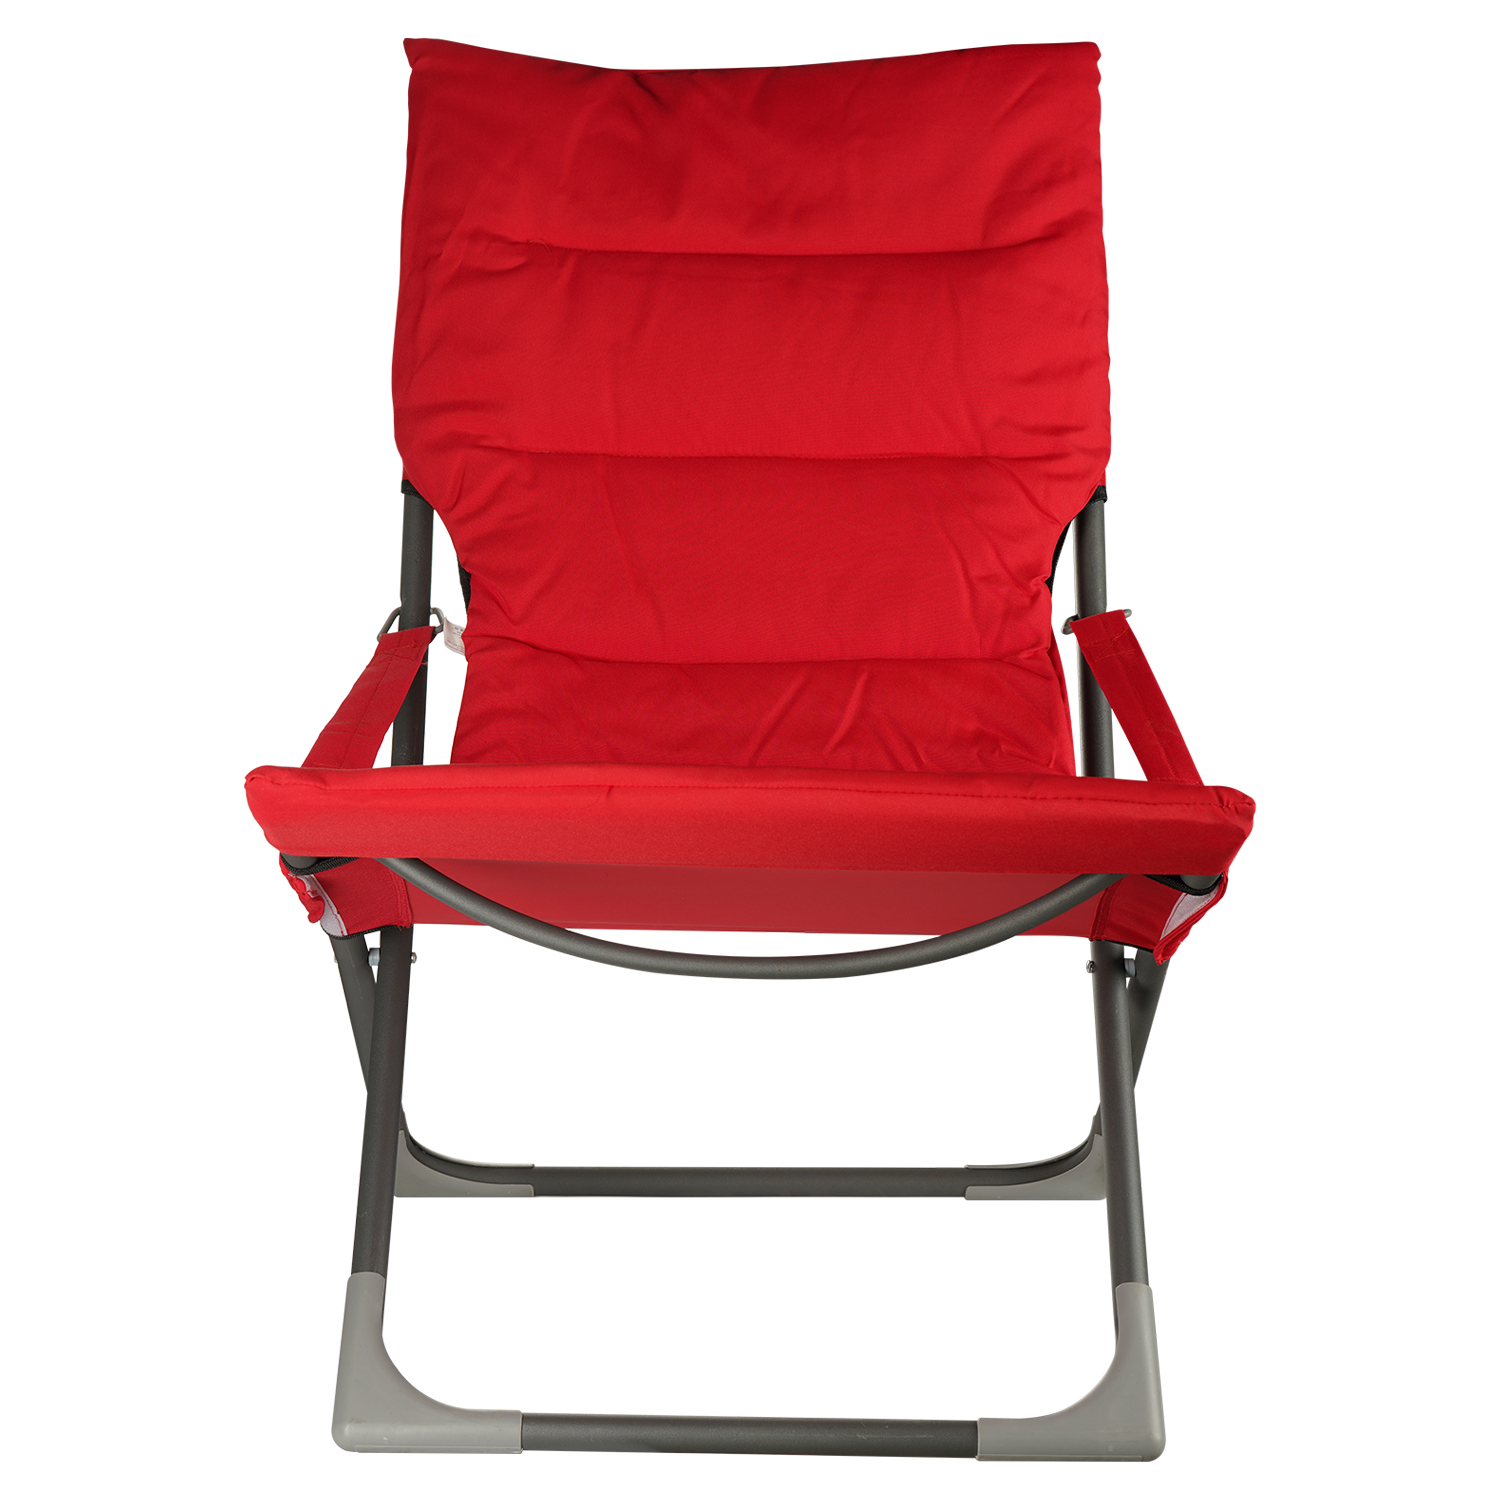 Кресло складное Market Union с подлокотниками 65х83х93 см красное - фото 2